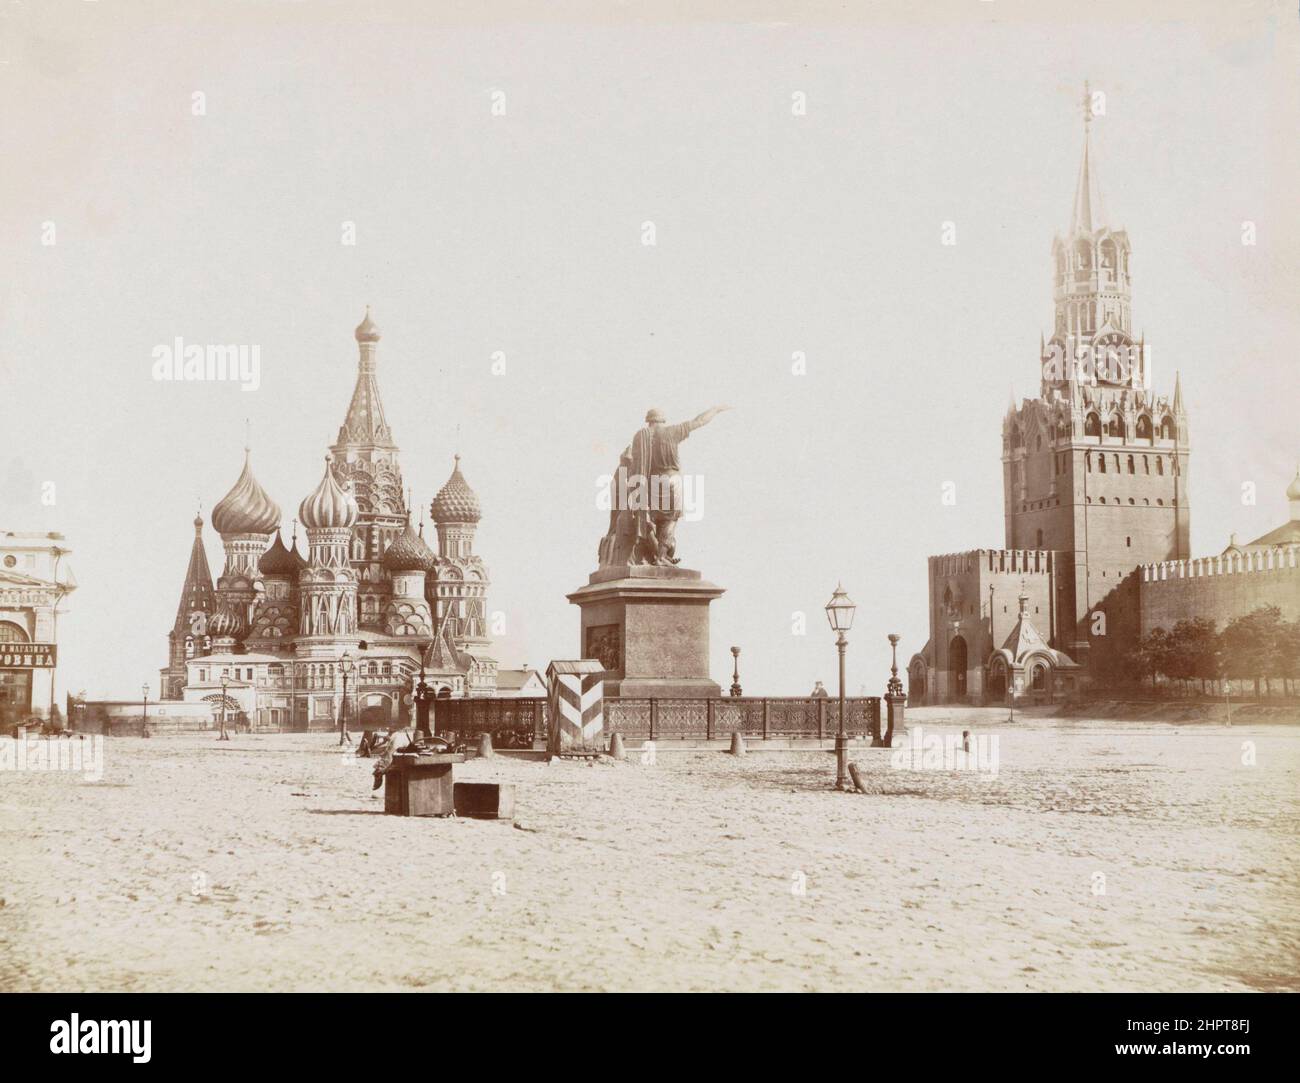 Foto di Piazza Rossa del 19th° secolo. Cattedrale di San Basilio, Monumento a Minin e Pozharsky, così come la Torre Spasskaya della Mosca Kremlin1850 - 1 Foto Stock